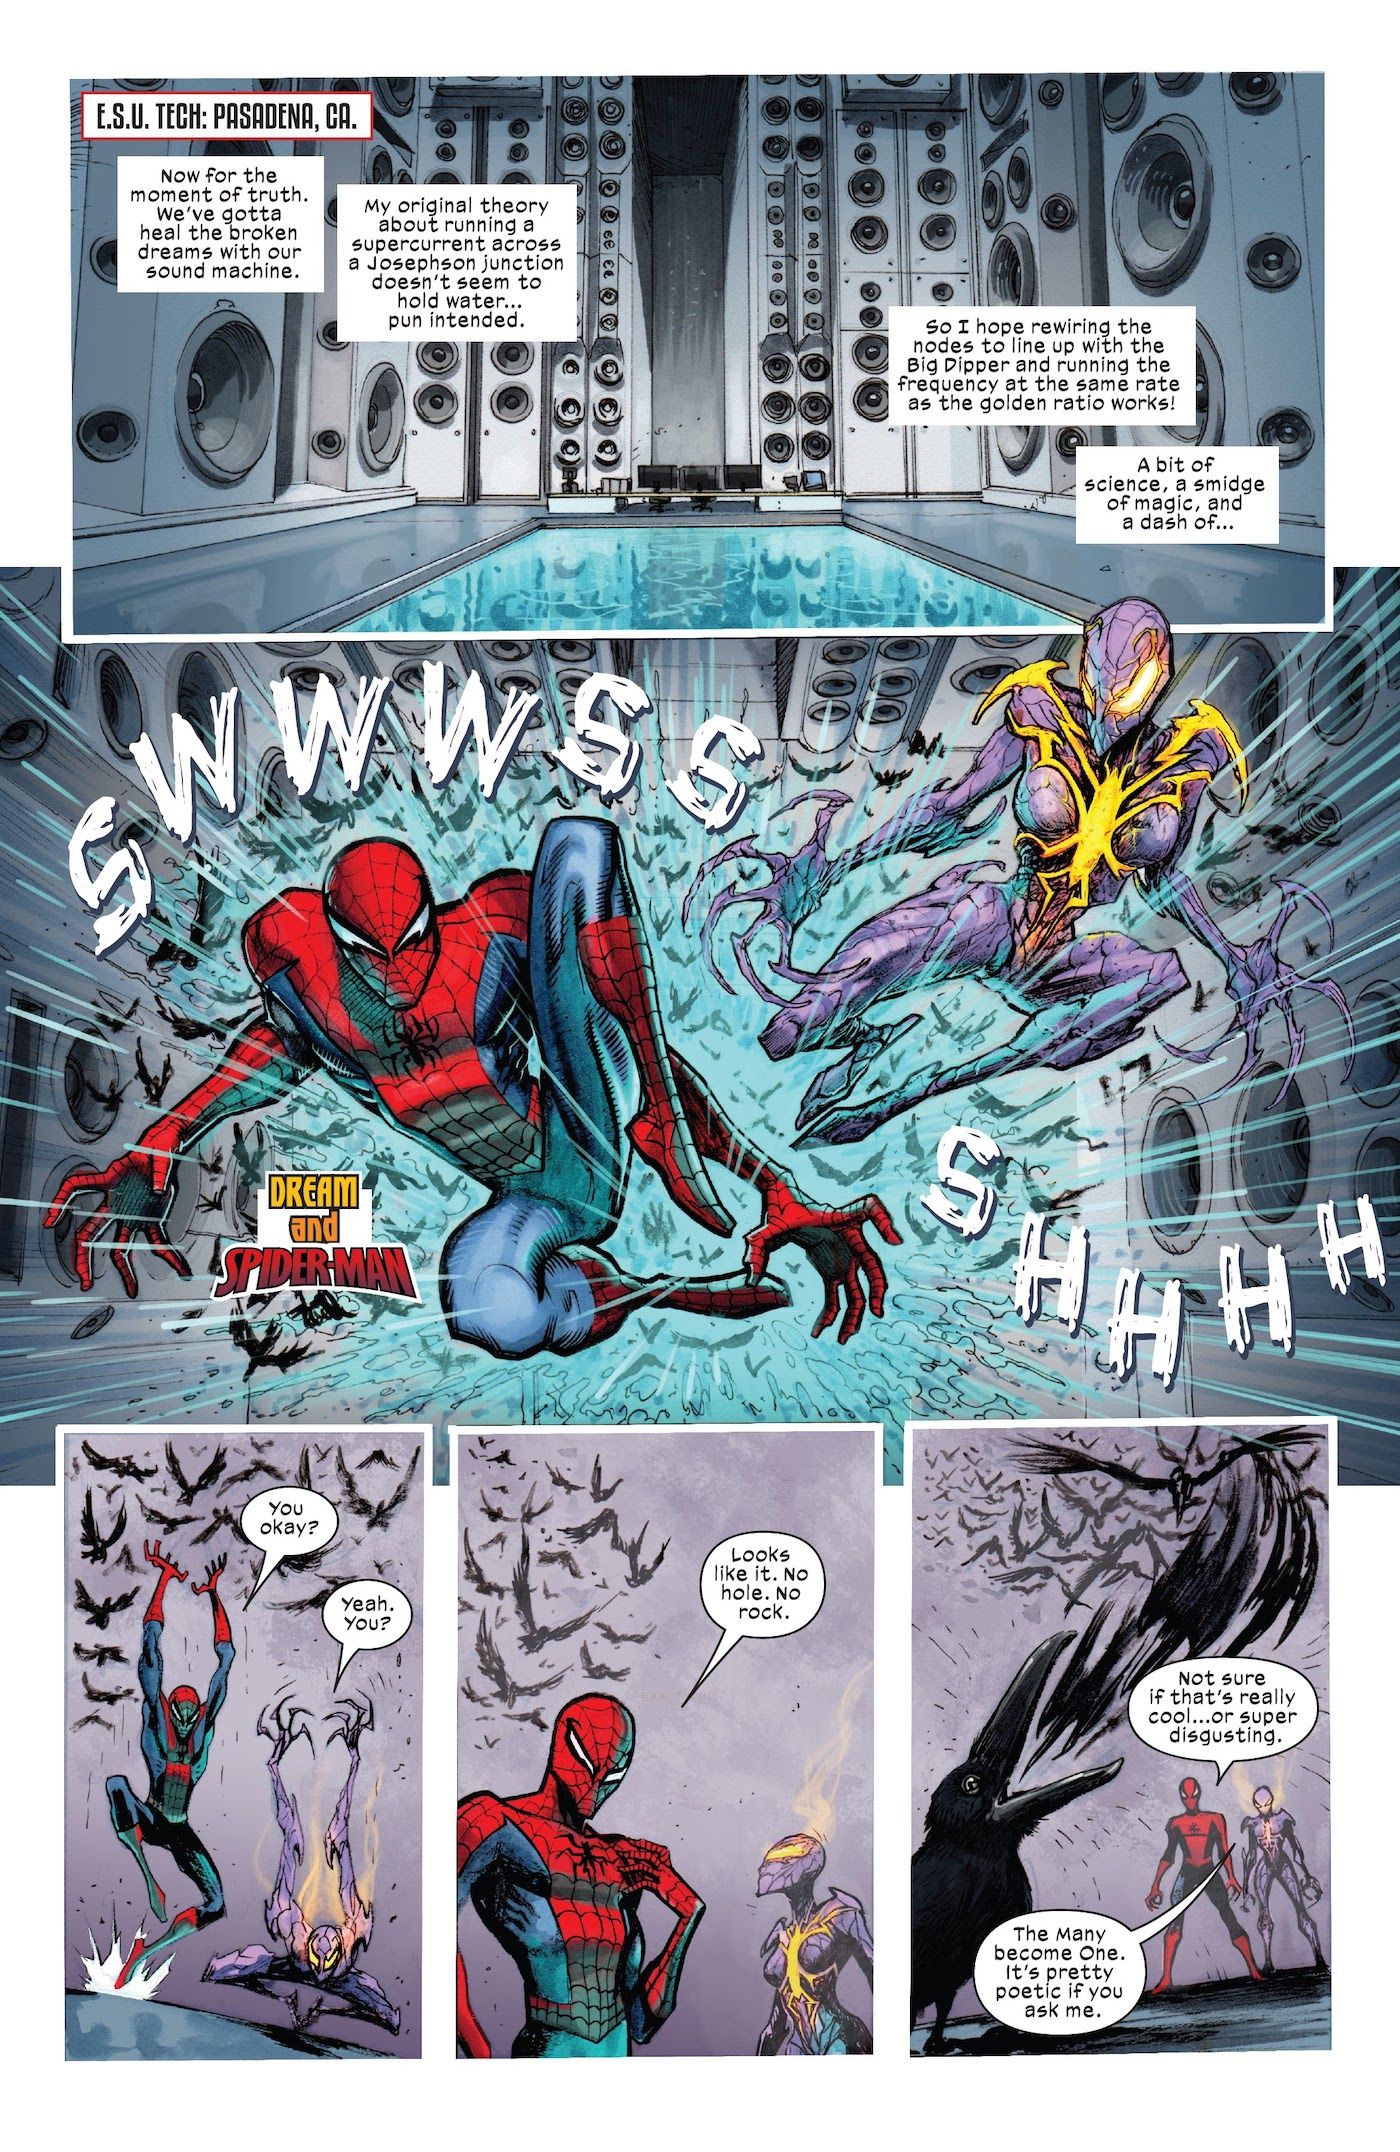 Spider-Man and Dream-Spider